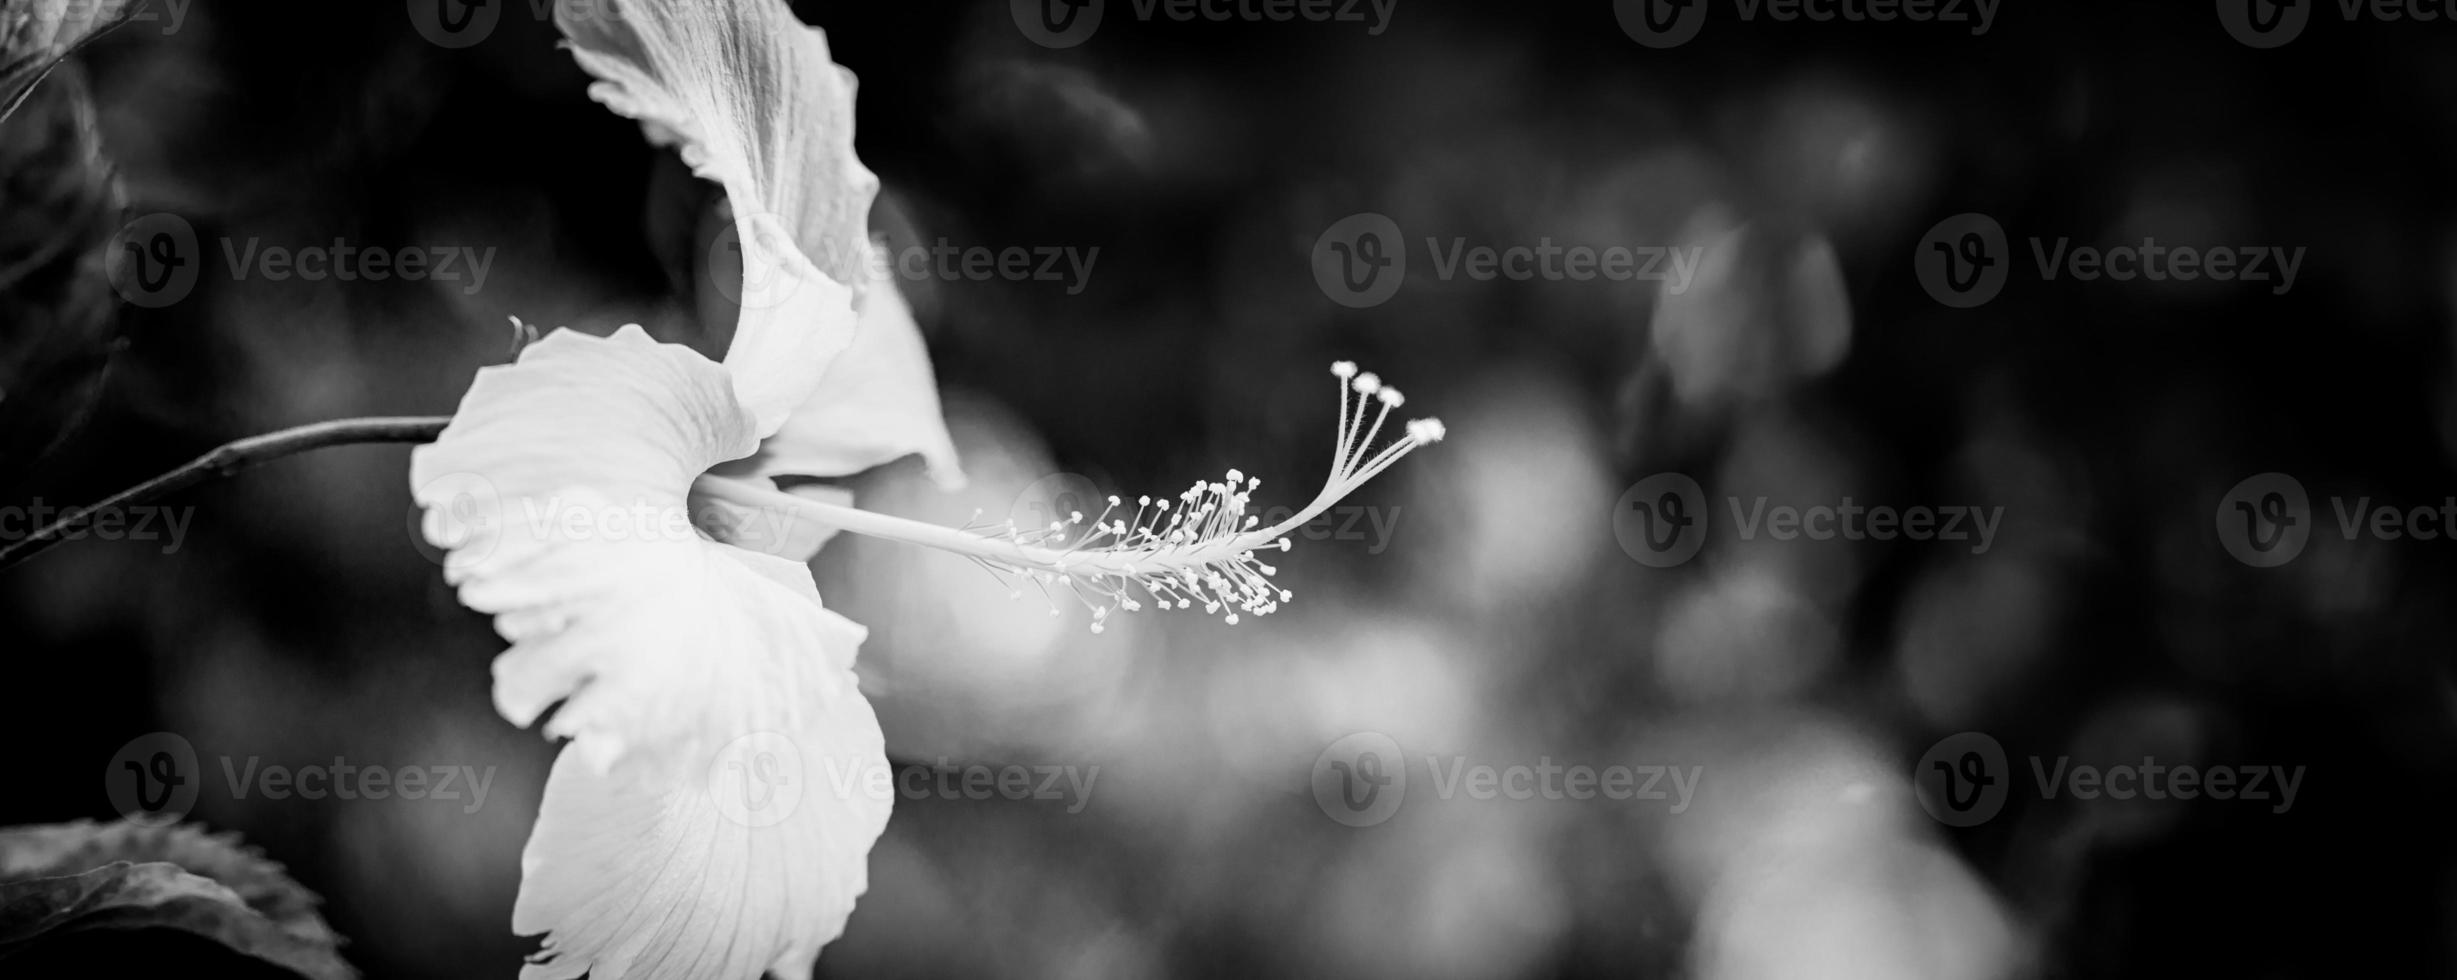 cabeza de hibisco blanco con follaje dramático oscuro sobre fondo negro minimalista. primer plano abstracto de la naturaleza tropical en blanco y negro. macro floral artística, composición mínima, monocromo de manantial natural foto